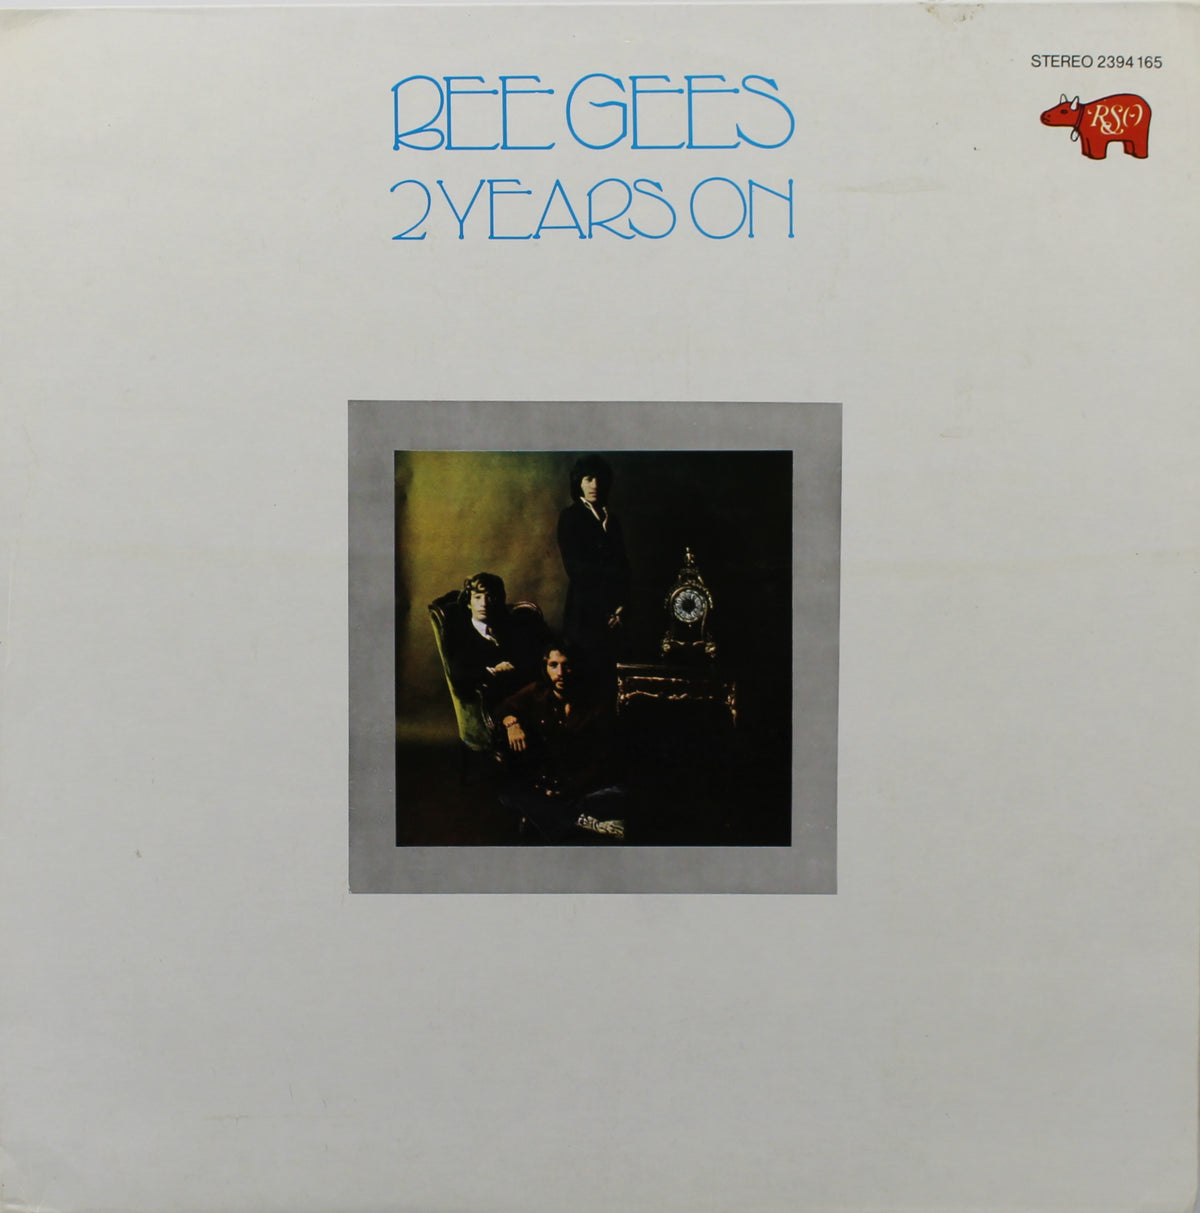 Bee Gees – 2 Years On, Vinyl, LP, Album, Reissue, Spain 1978